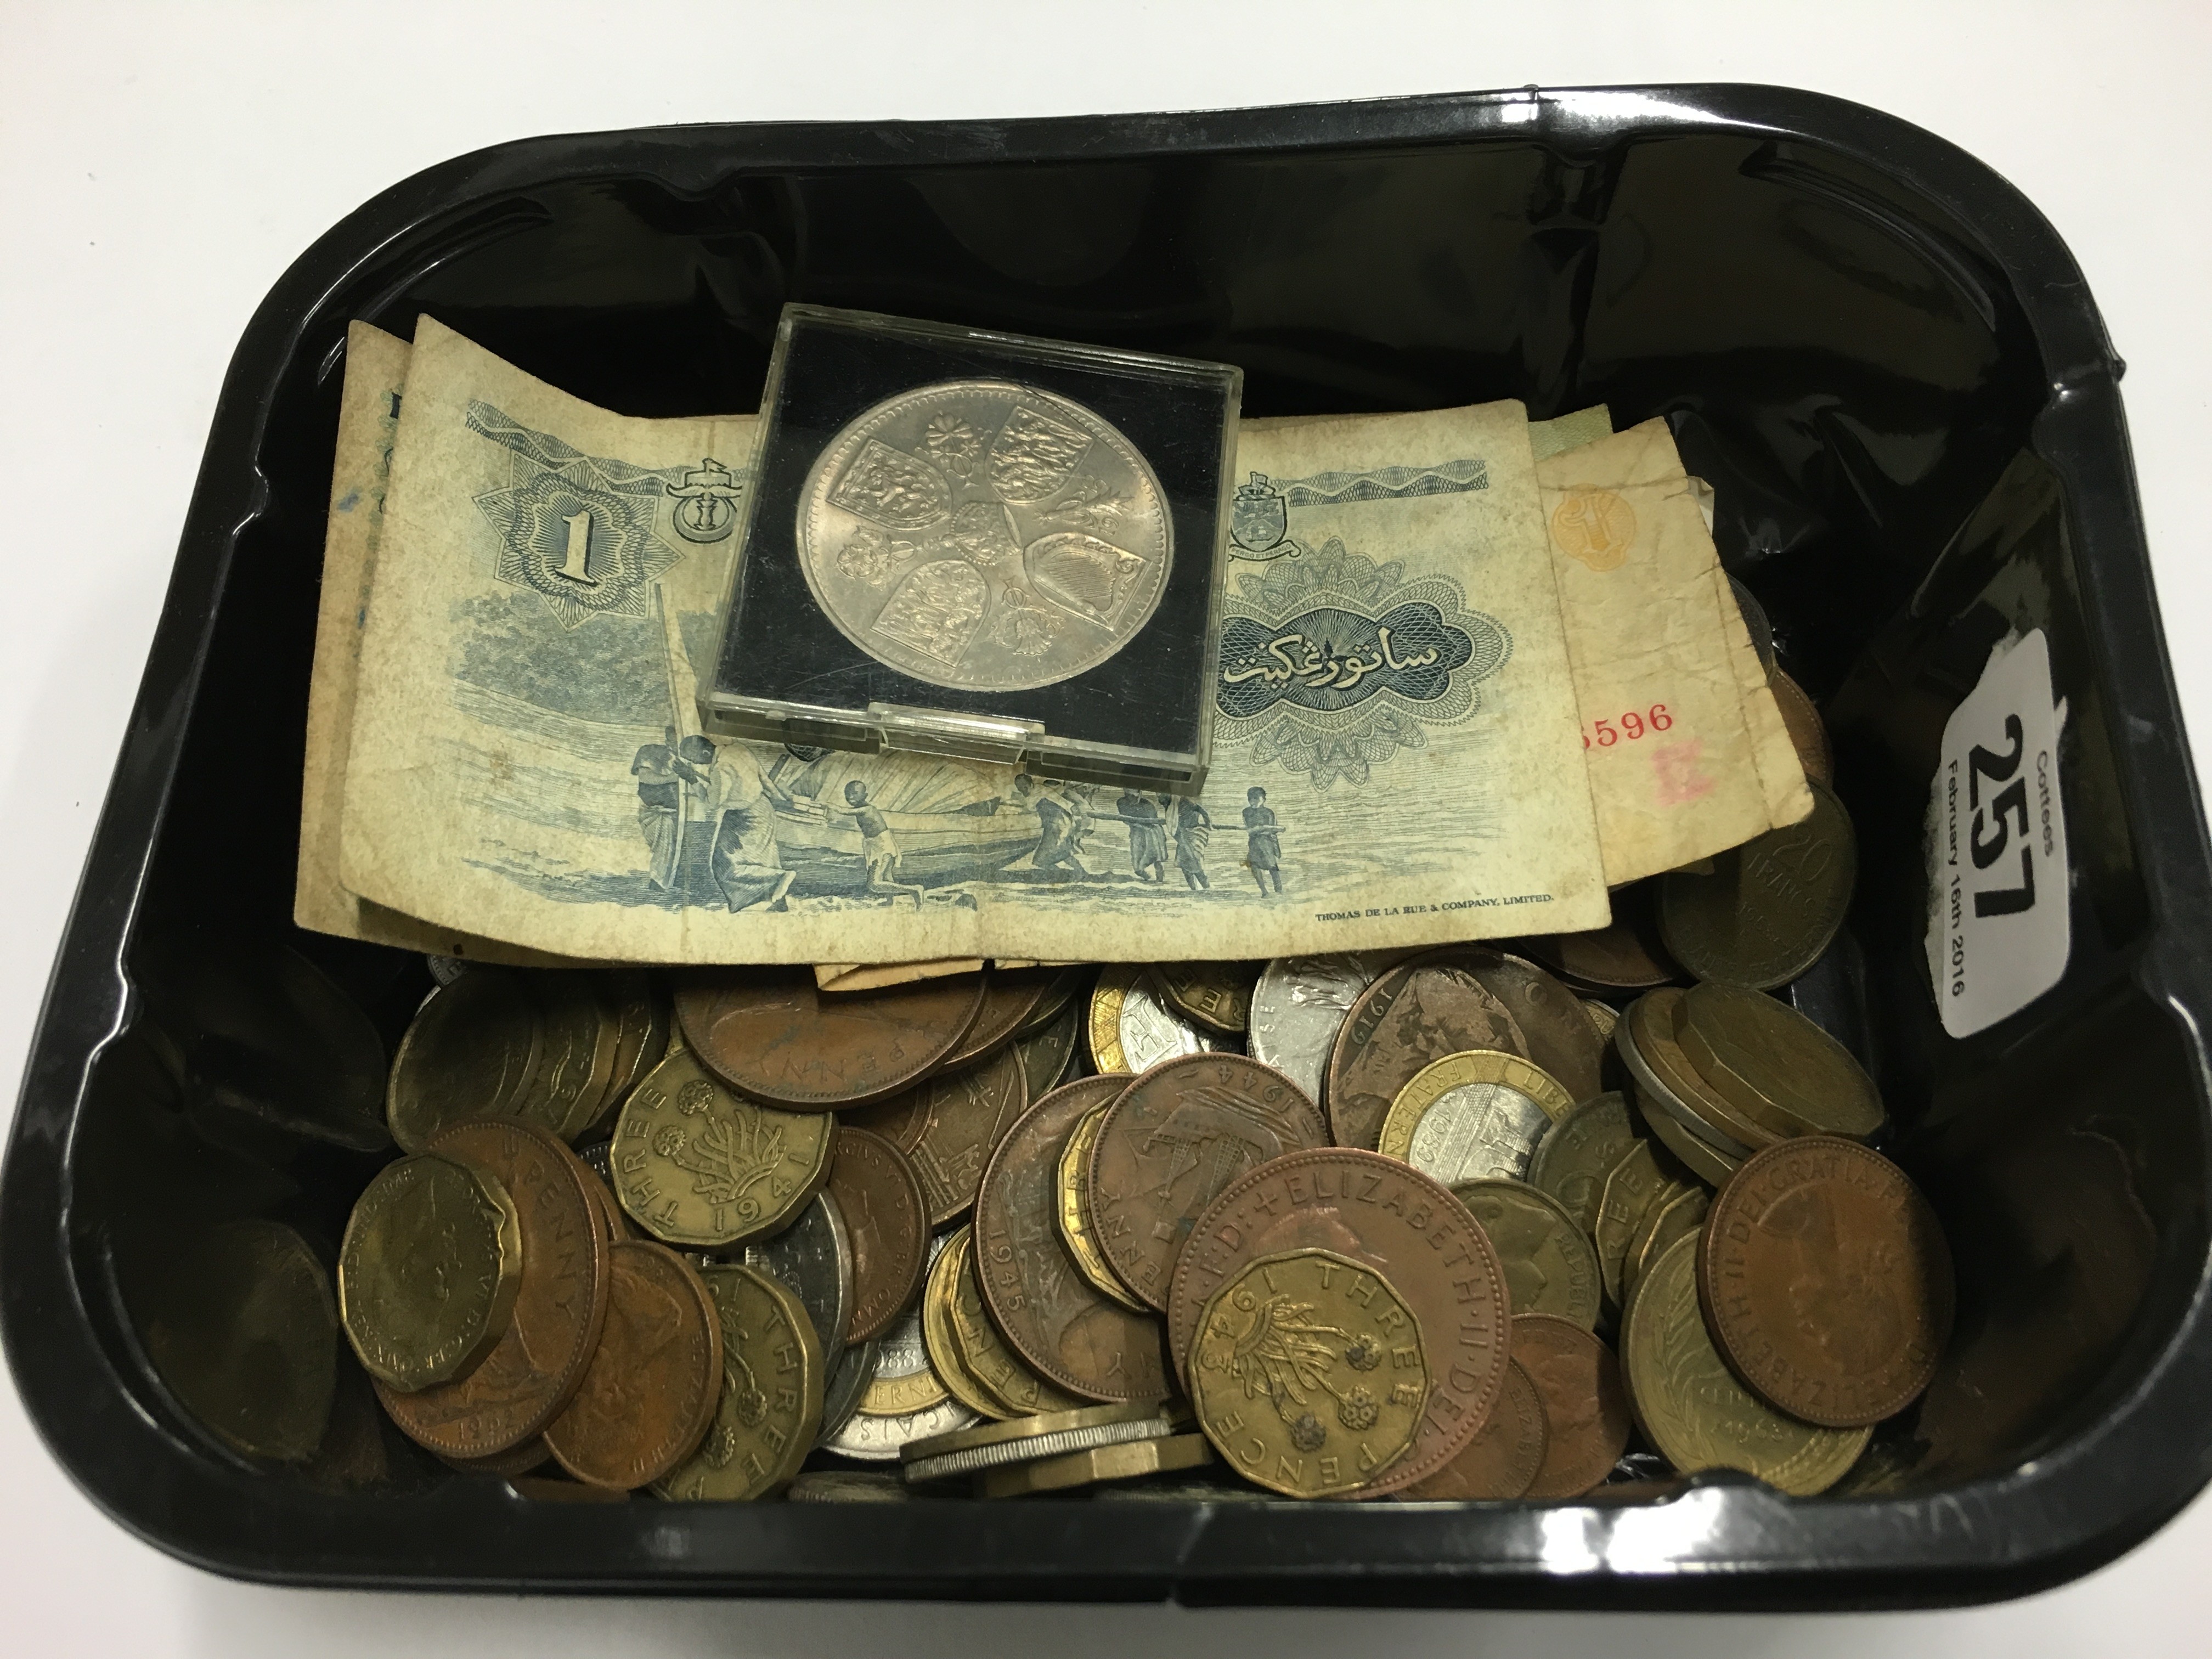 A carton of various coins.